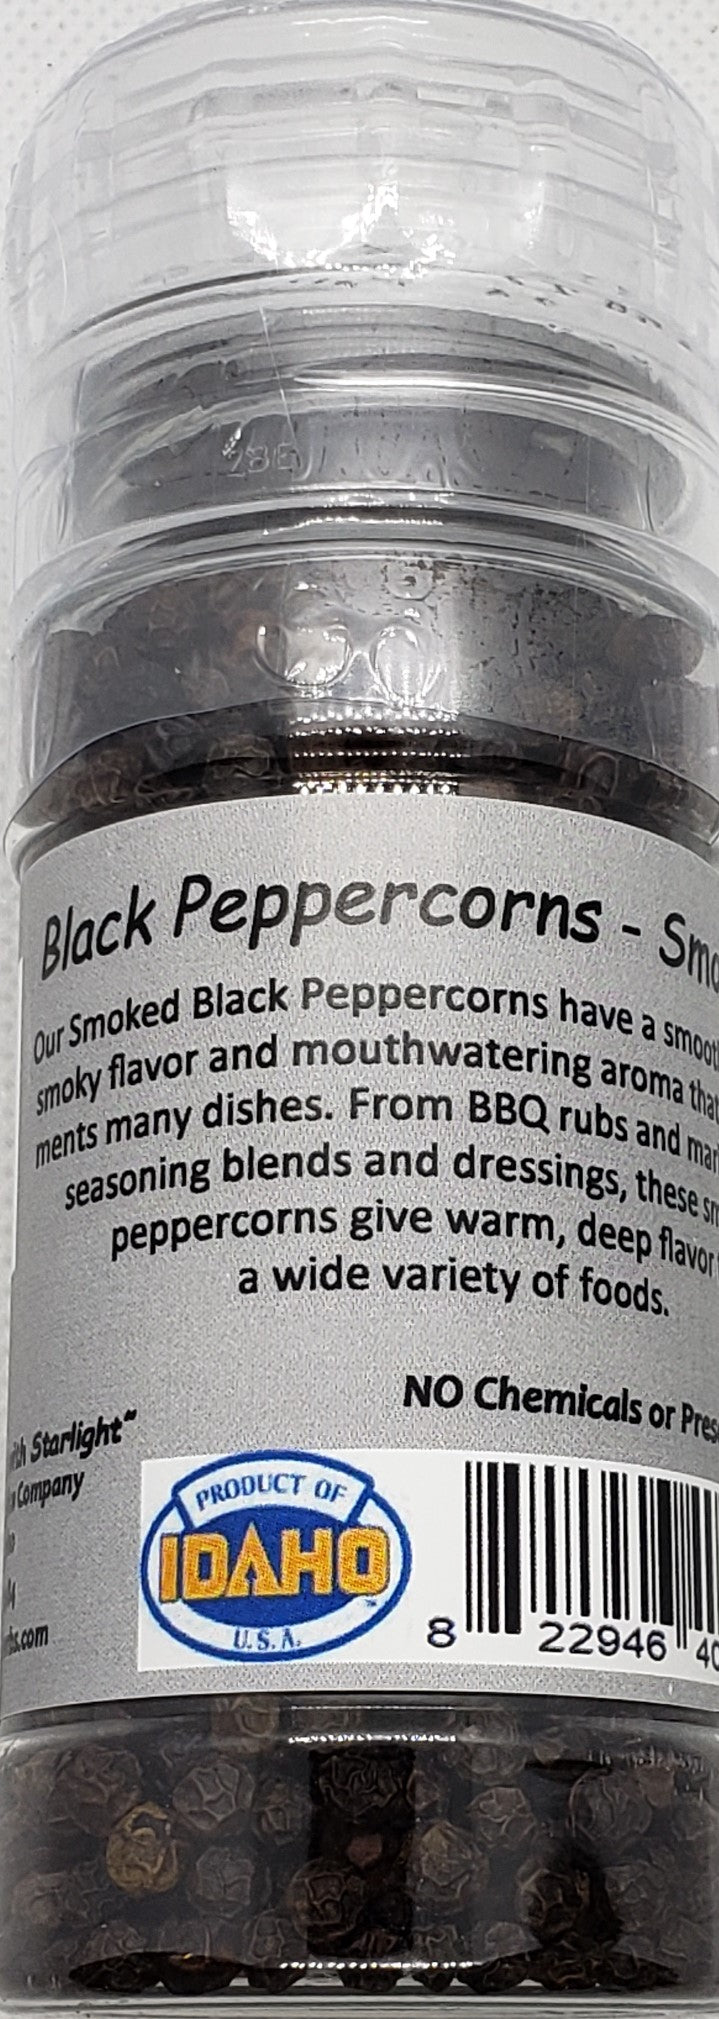 Black Peppercorns, Smoked